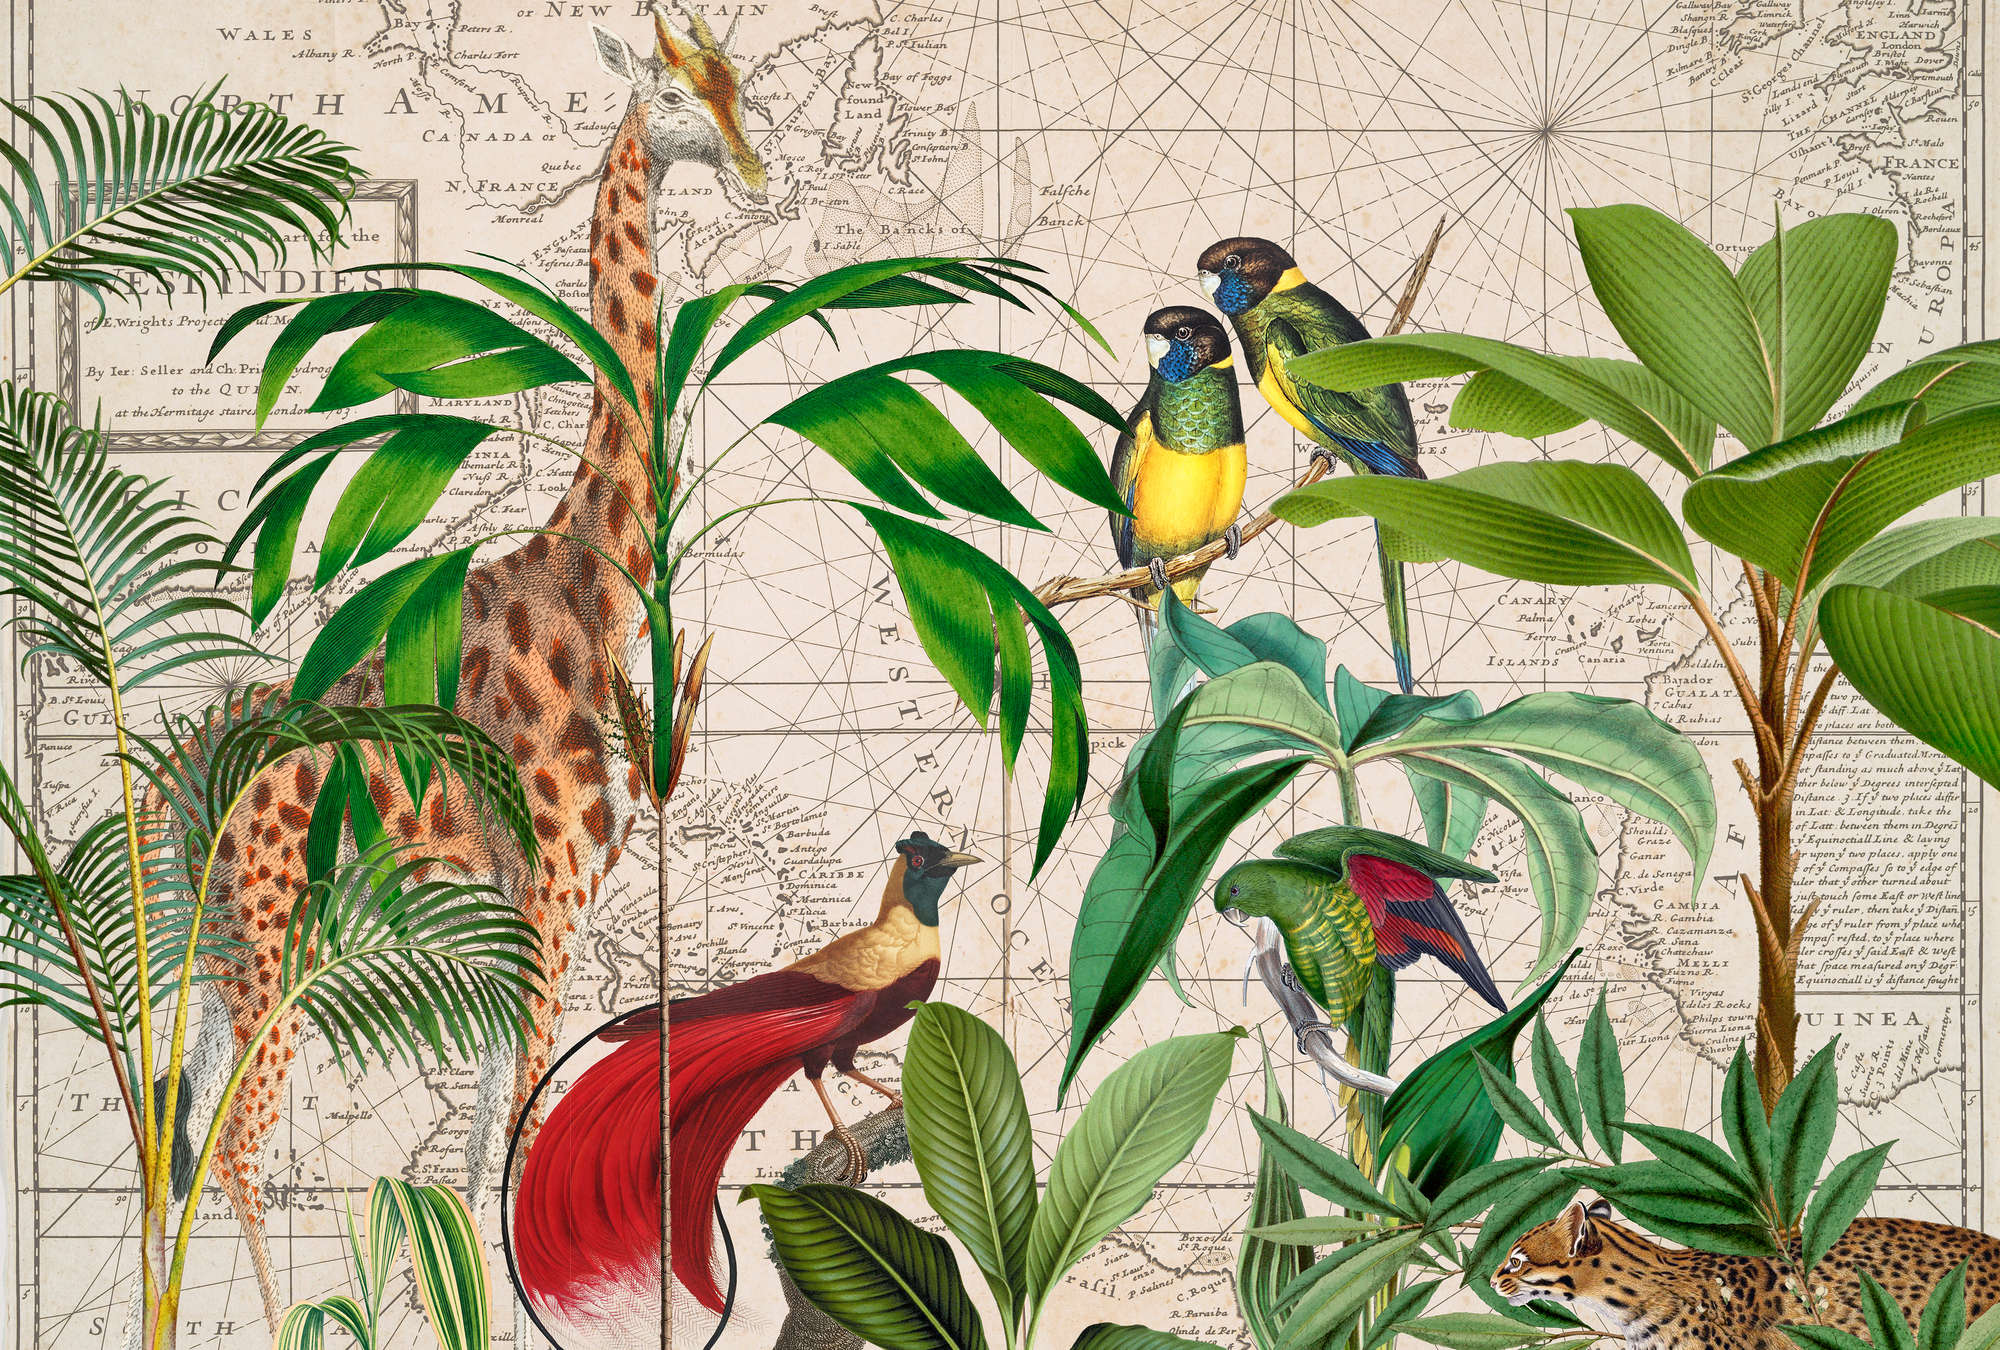             Papier peint animalier oiseaux & girafes avec carte géographique rétro de style collage
        